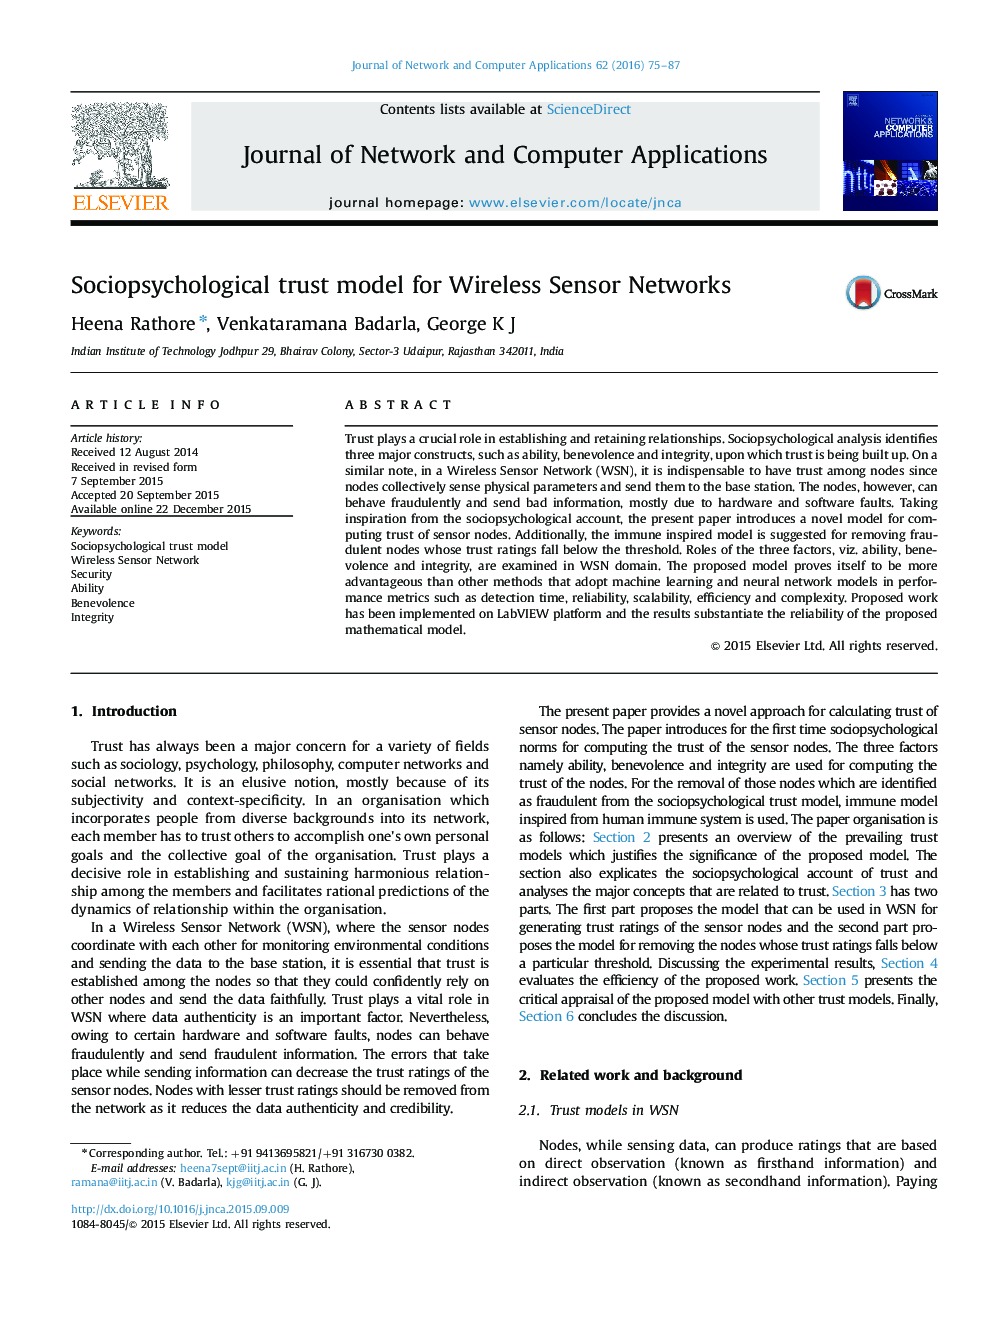 مدل اعتماد اجتماعی روانشناختی برای شبکه های سنسور بی سیم 